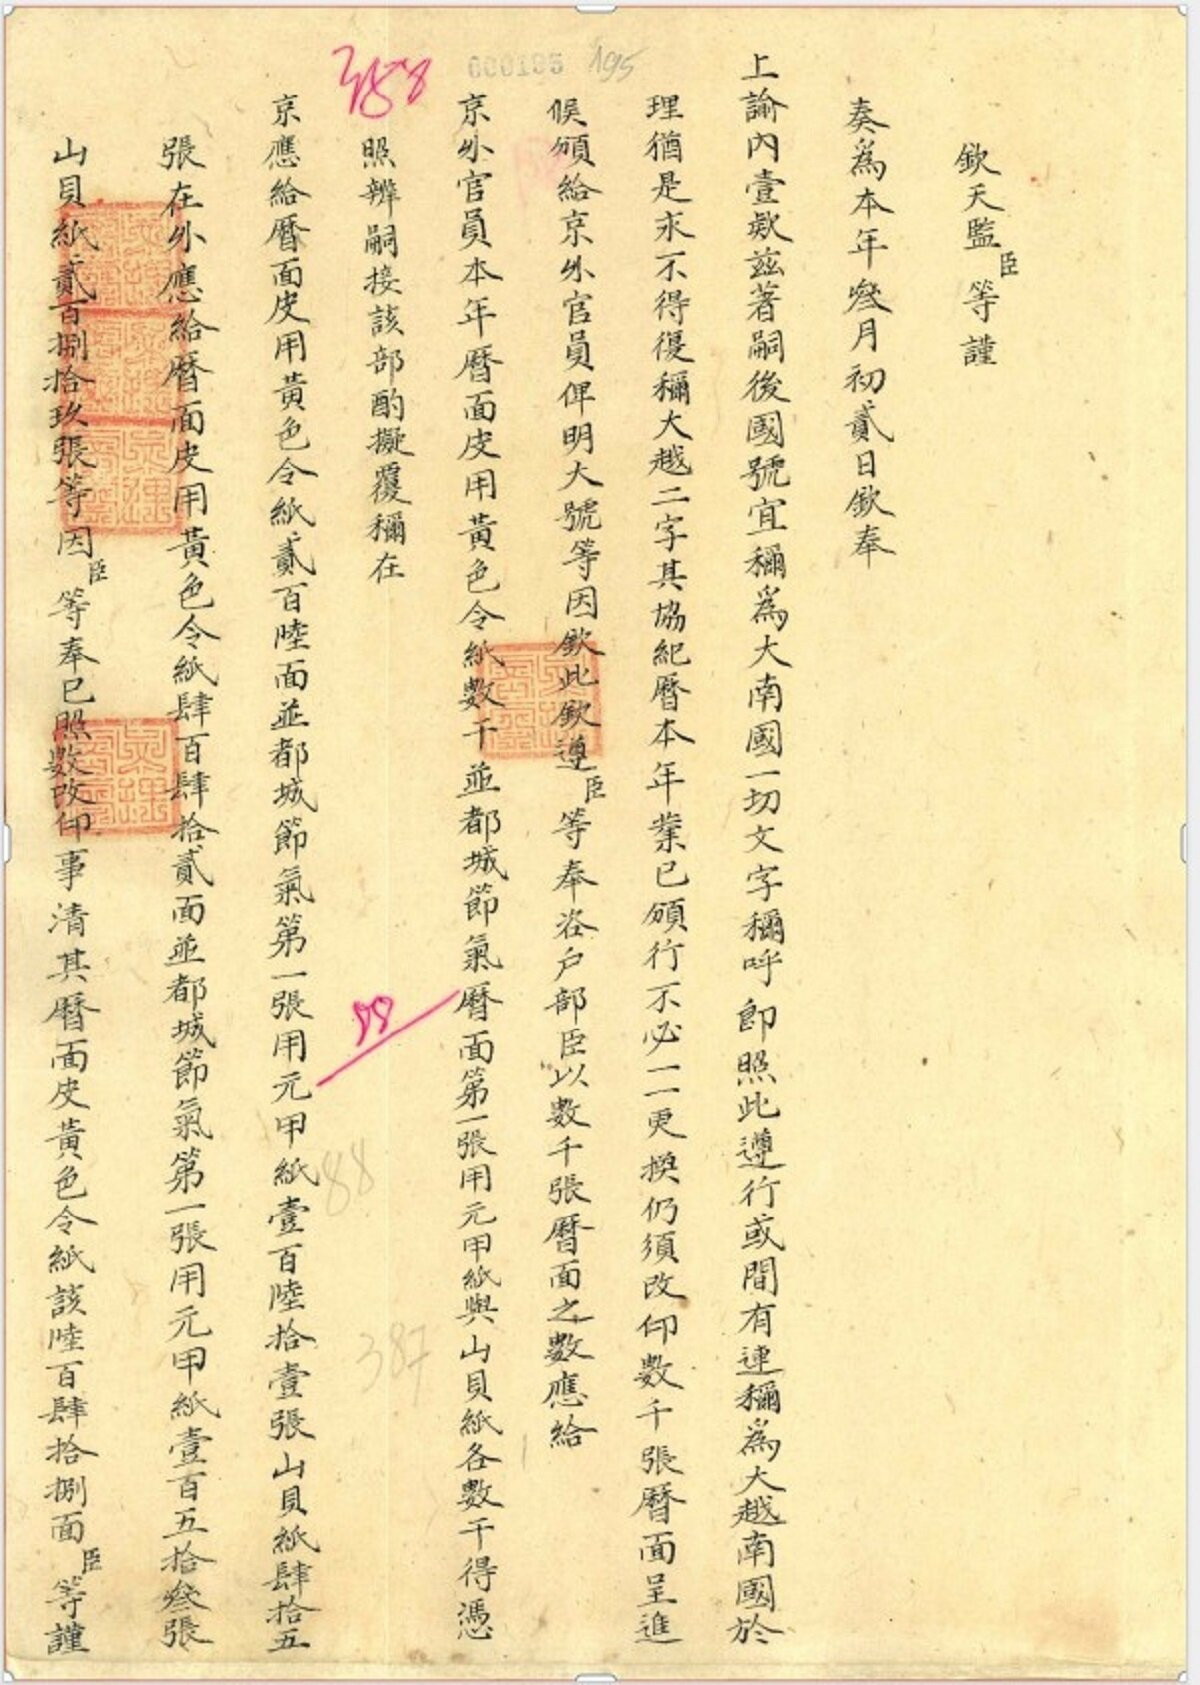 Châu bản năm Minh Mạng 19 (1838) cho biết từ đây quốc hiệu nước ta là Đại Nam. (Nguồn: Trung tâm Lưu trữ quốc gia I)